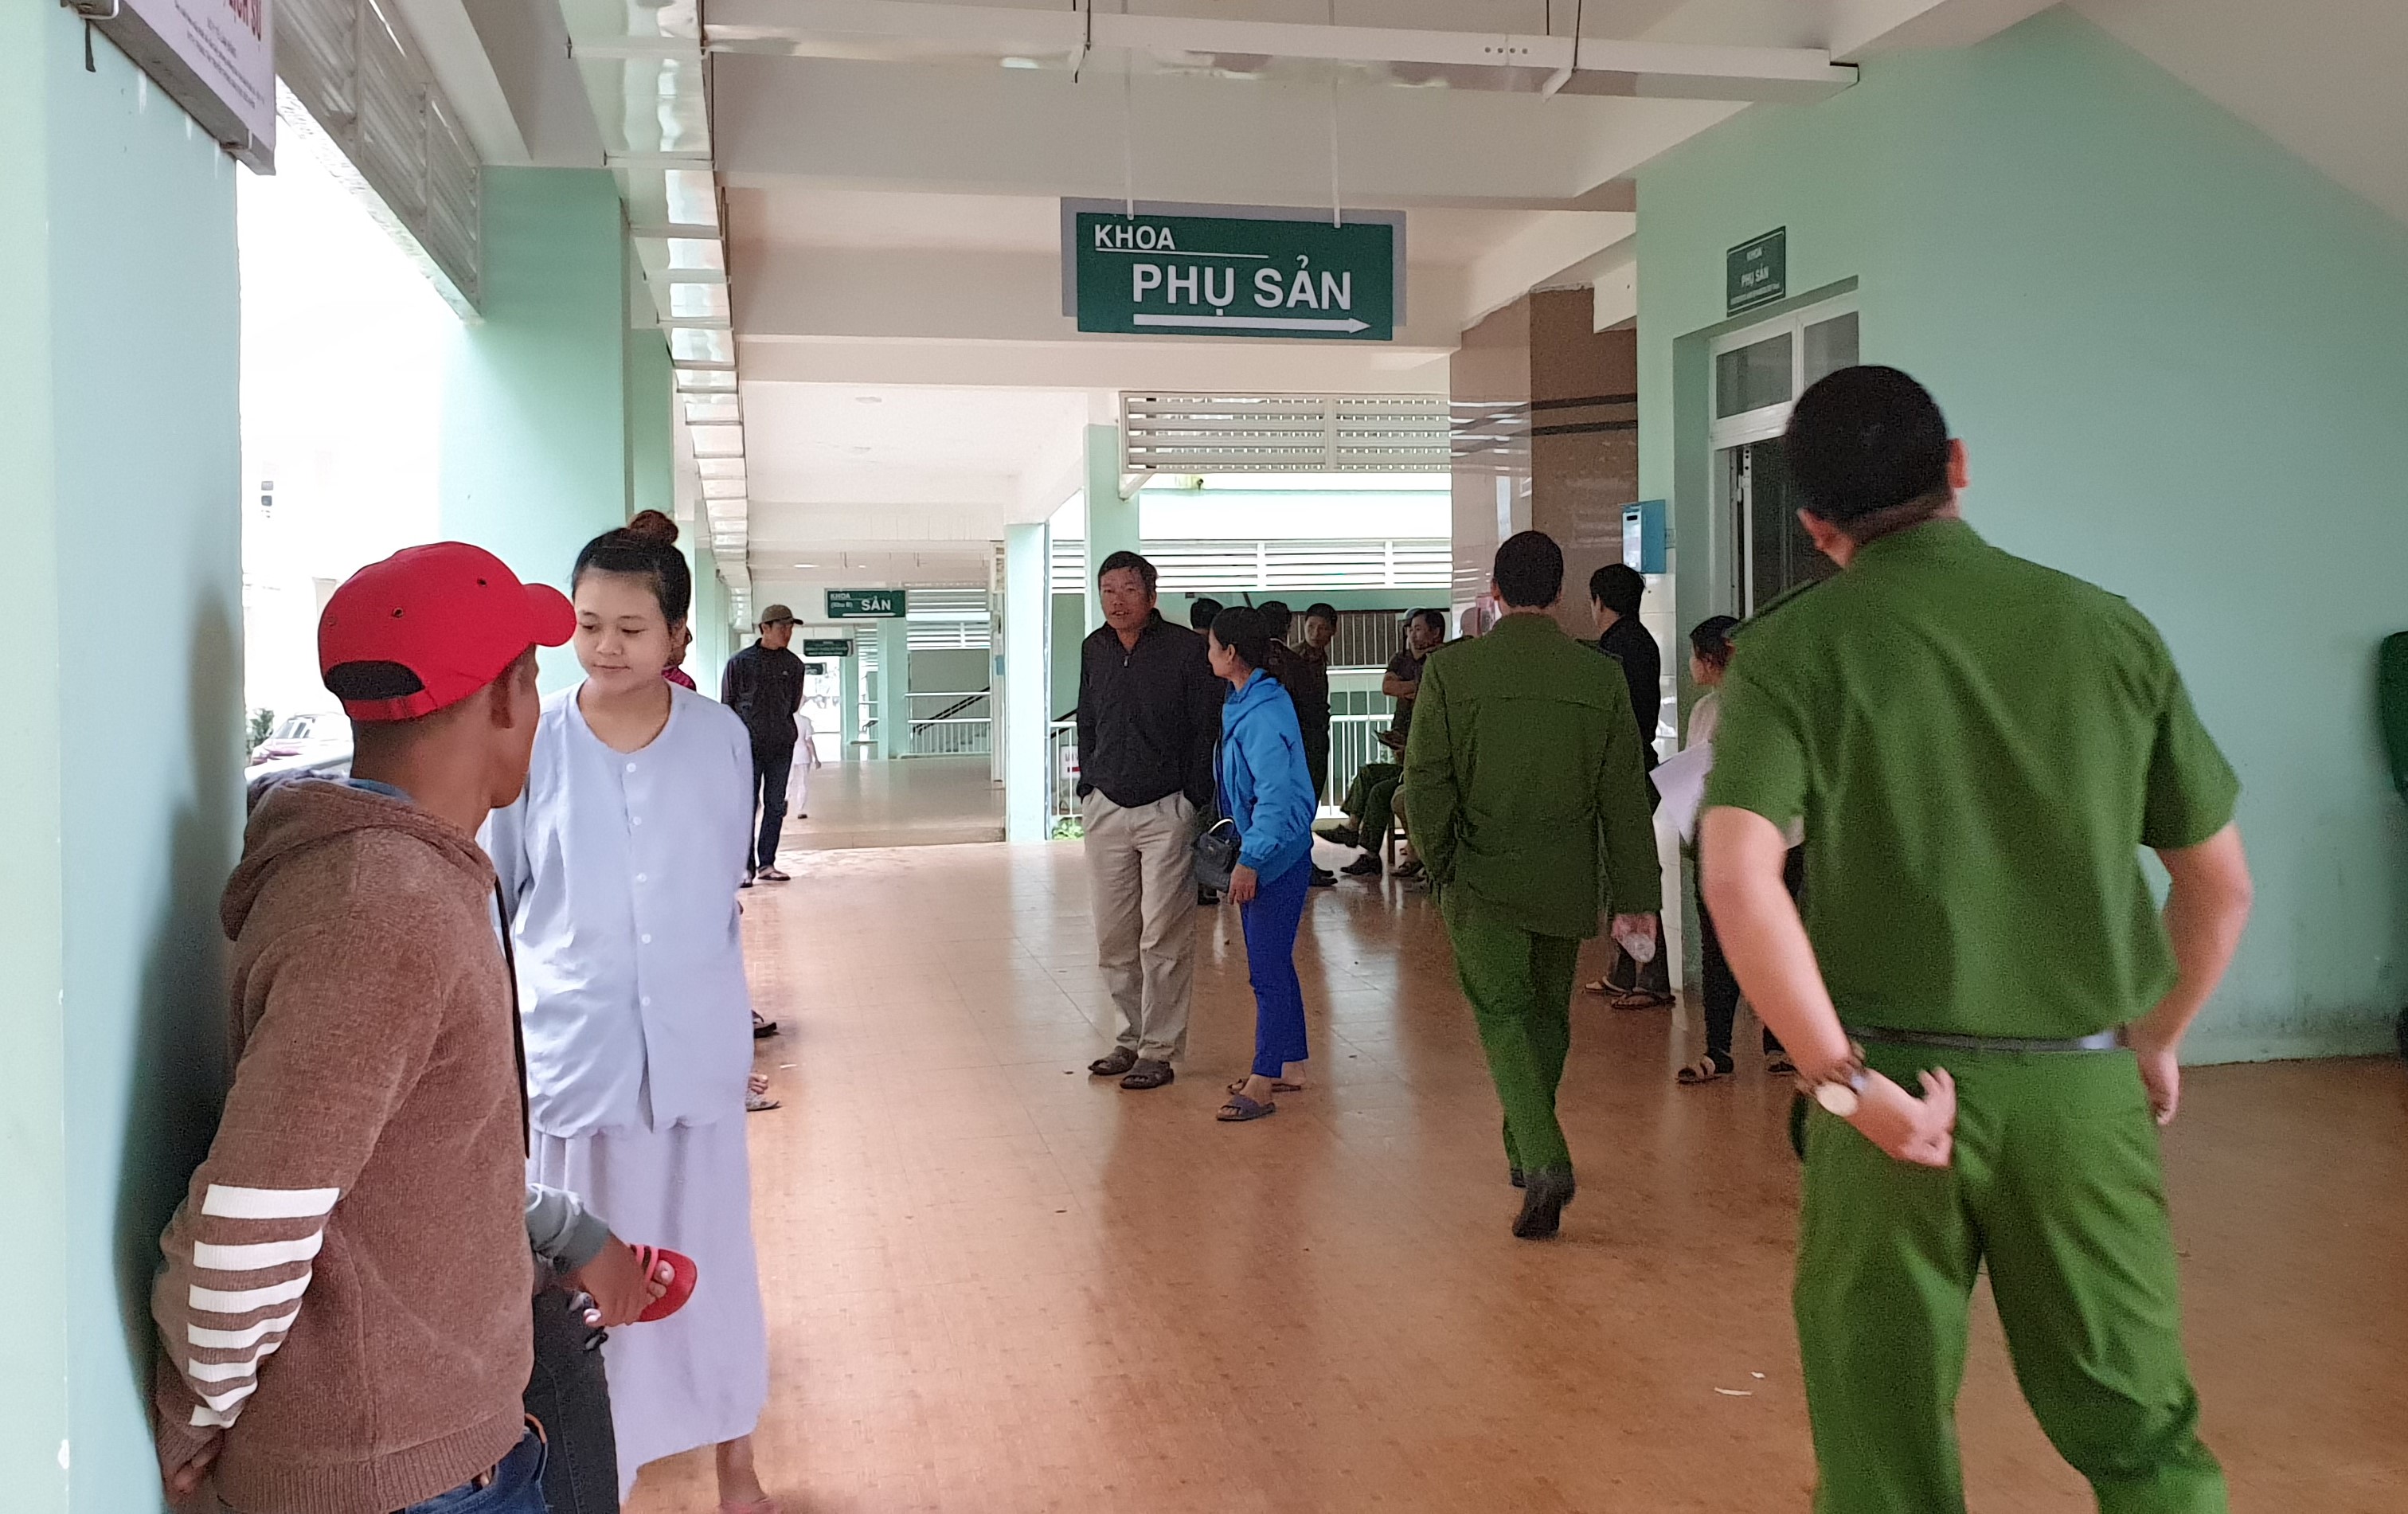 Sản phụ mất con oan uổng khi đến sinh tại Bệnh viện II Lâm Đồng